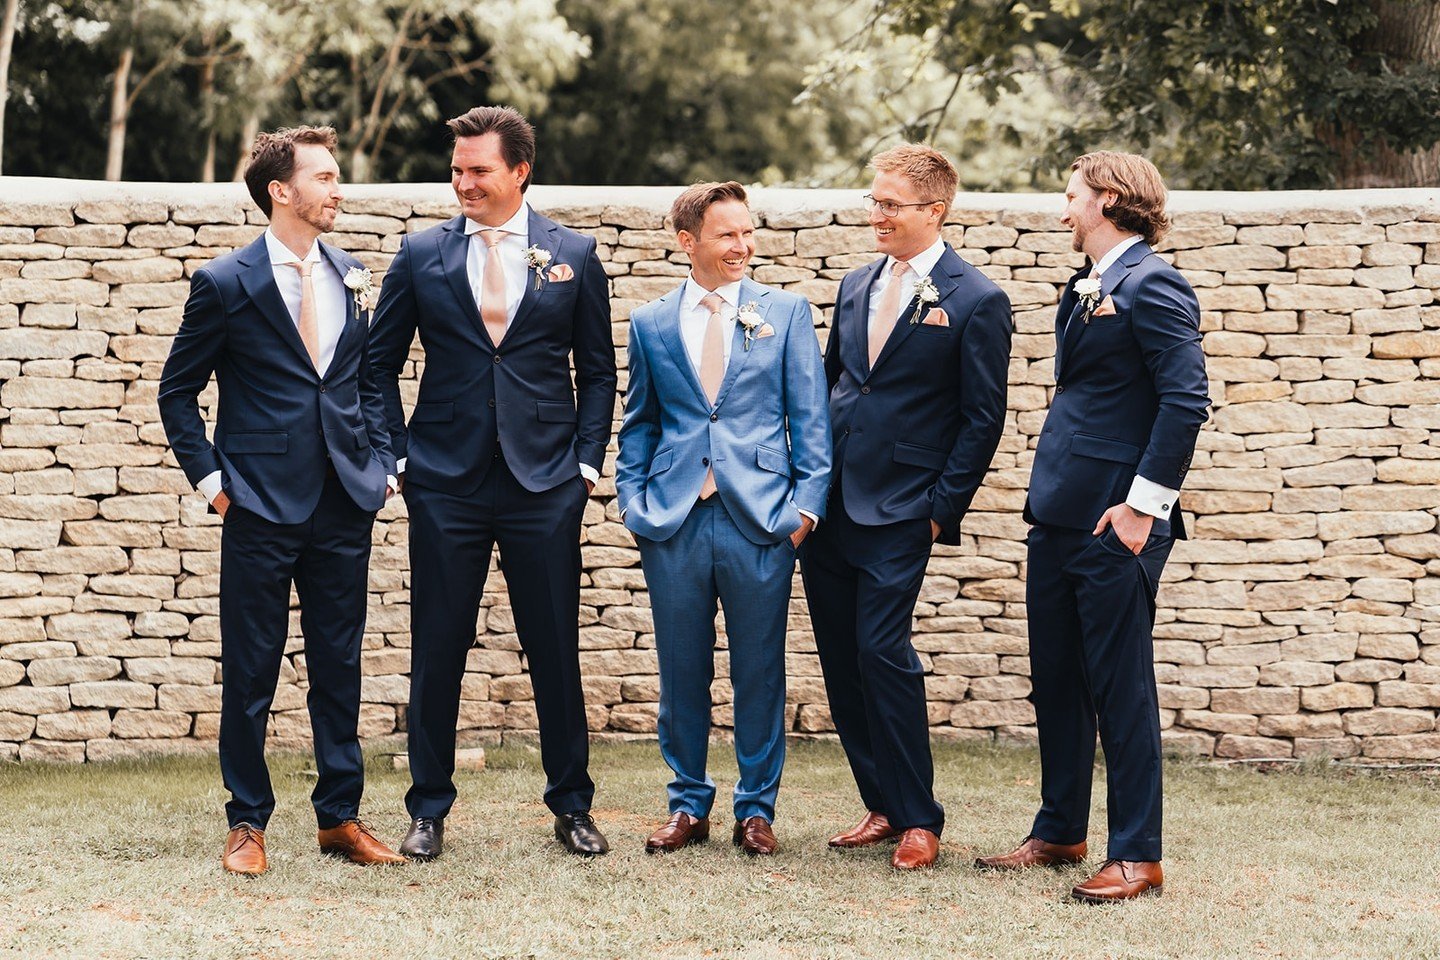 Here come the boys...

Images by @suzyelizabethphotography

#realwedding #cotswold #cotswoldwedding #weddingideas #weddingceremony #ceremony #ido #ourwedding